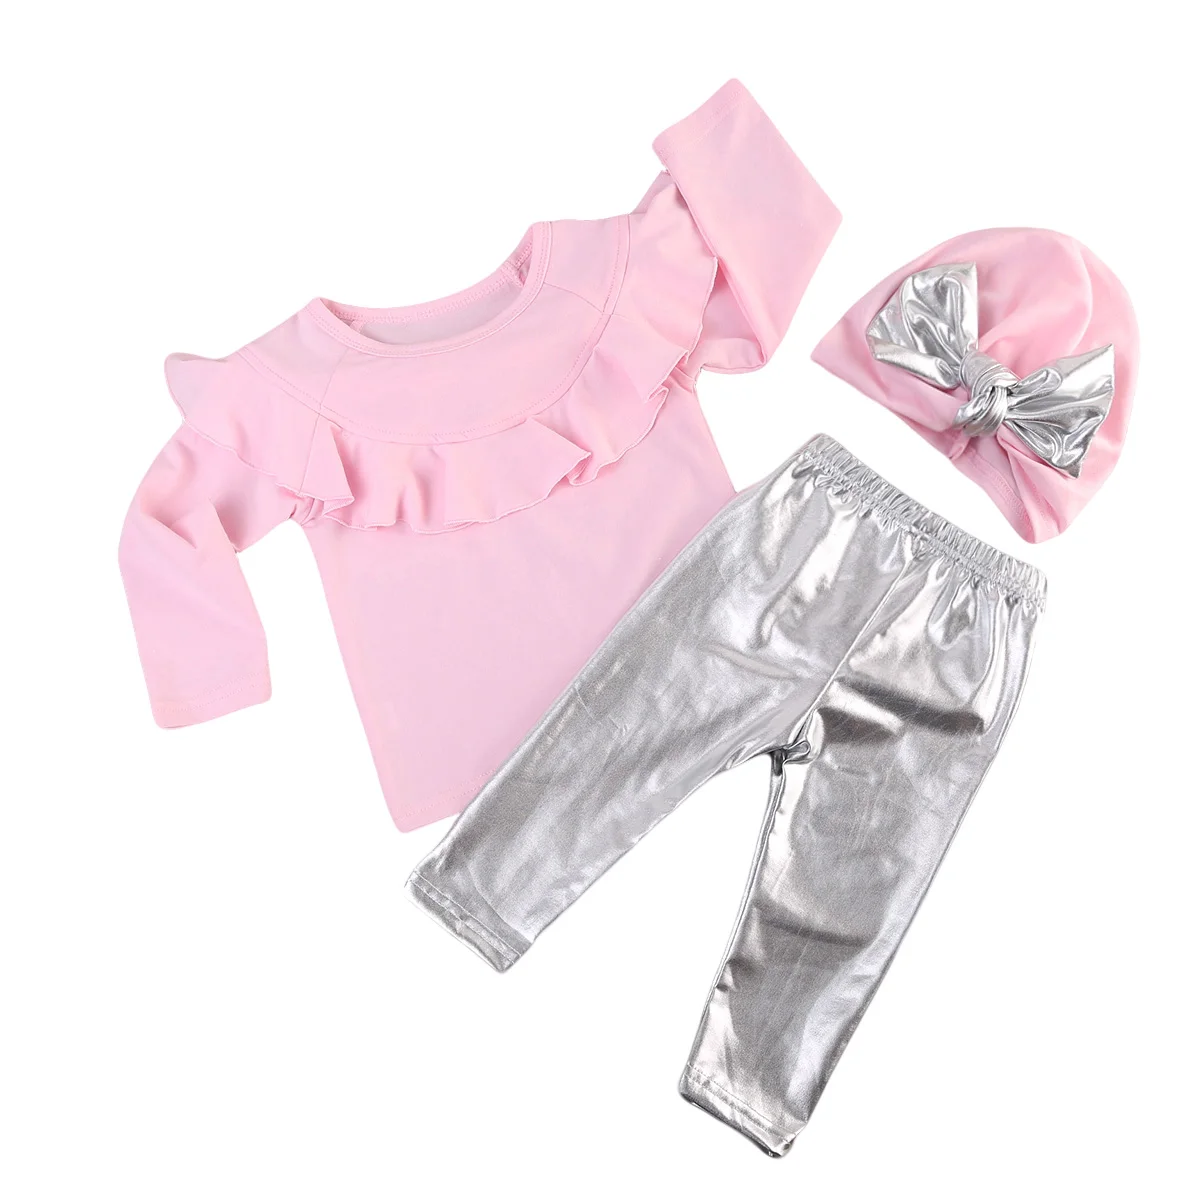 Милая детская одежда для маленьких девочек из 3 предметов розовые топы с оборками, футболки Серебристые леггинсы из искусственной кожи, штаны комплекты с шапками весенний комплект одежды для девочек